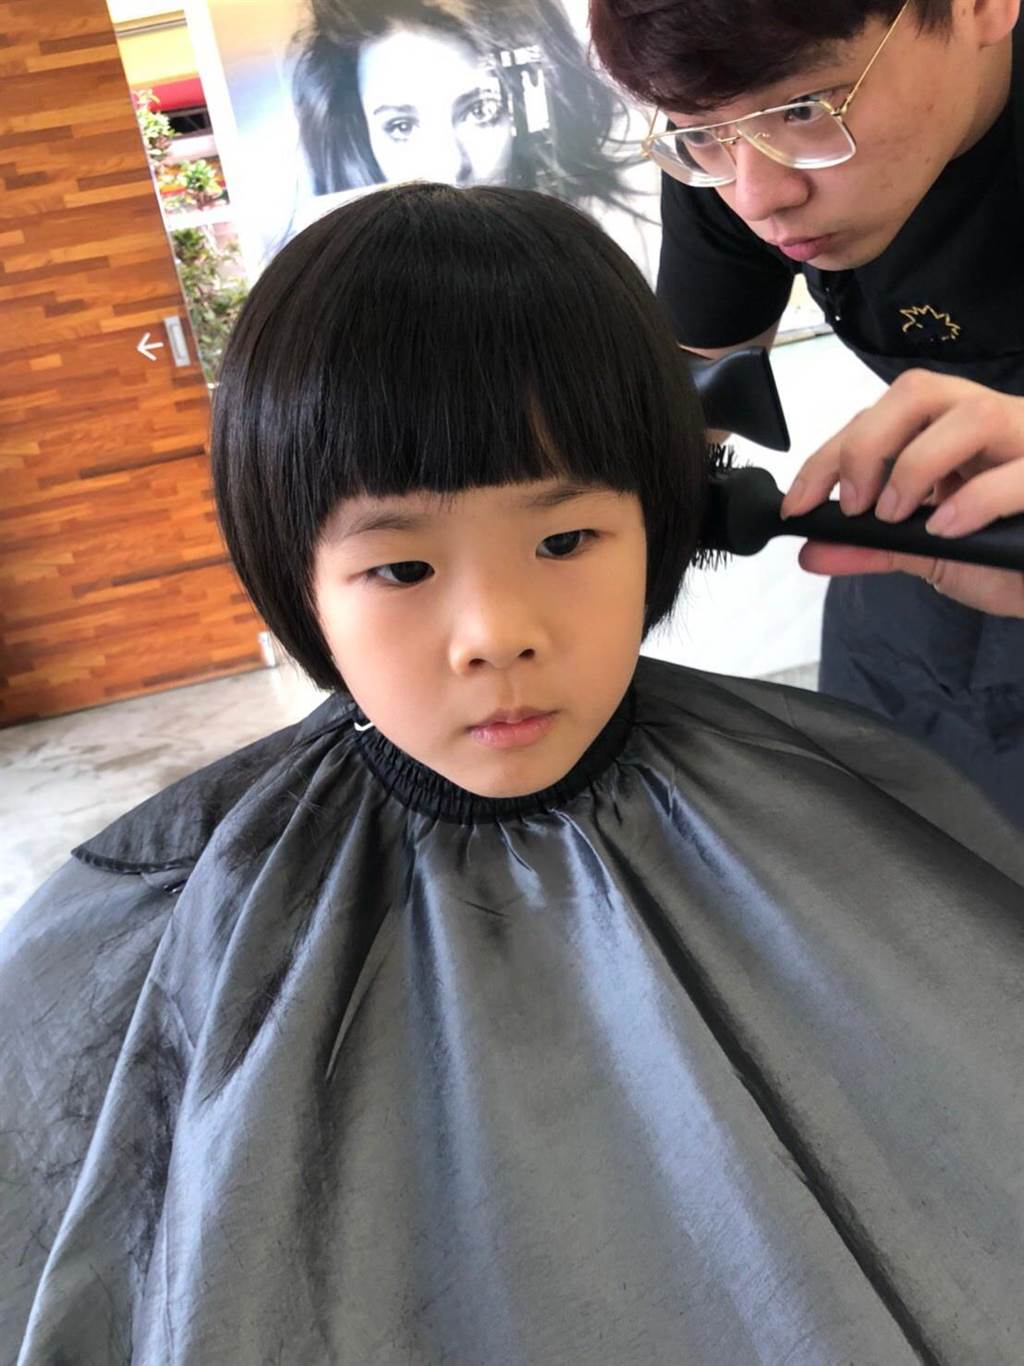 歡迎光臨自家理髮廳！親手幫孩子剪頭髮省錢又方便 | 蕃新聞